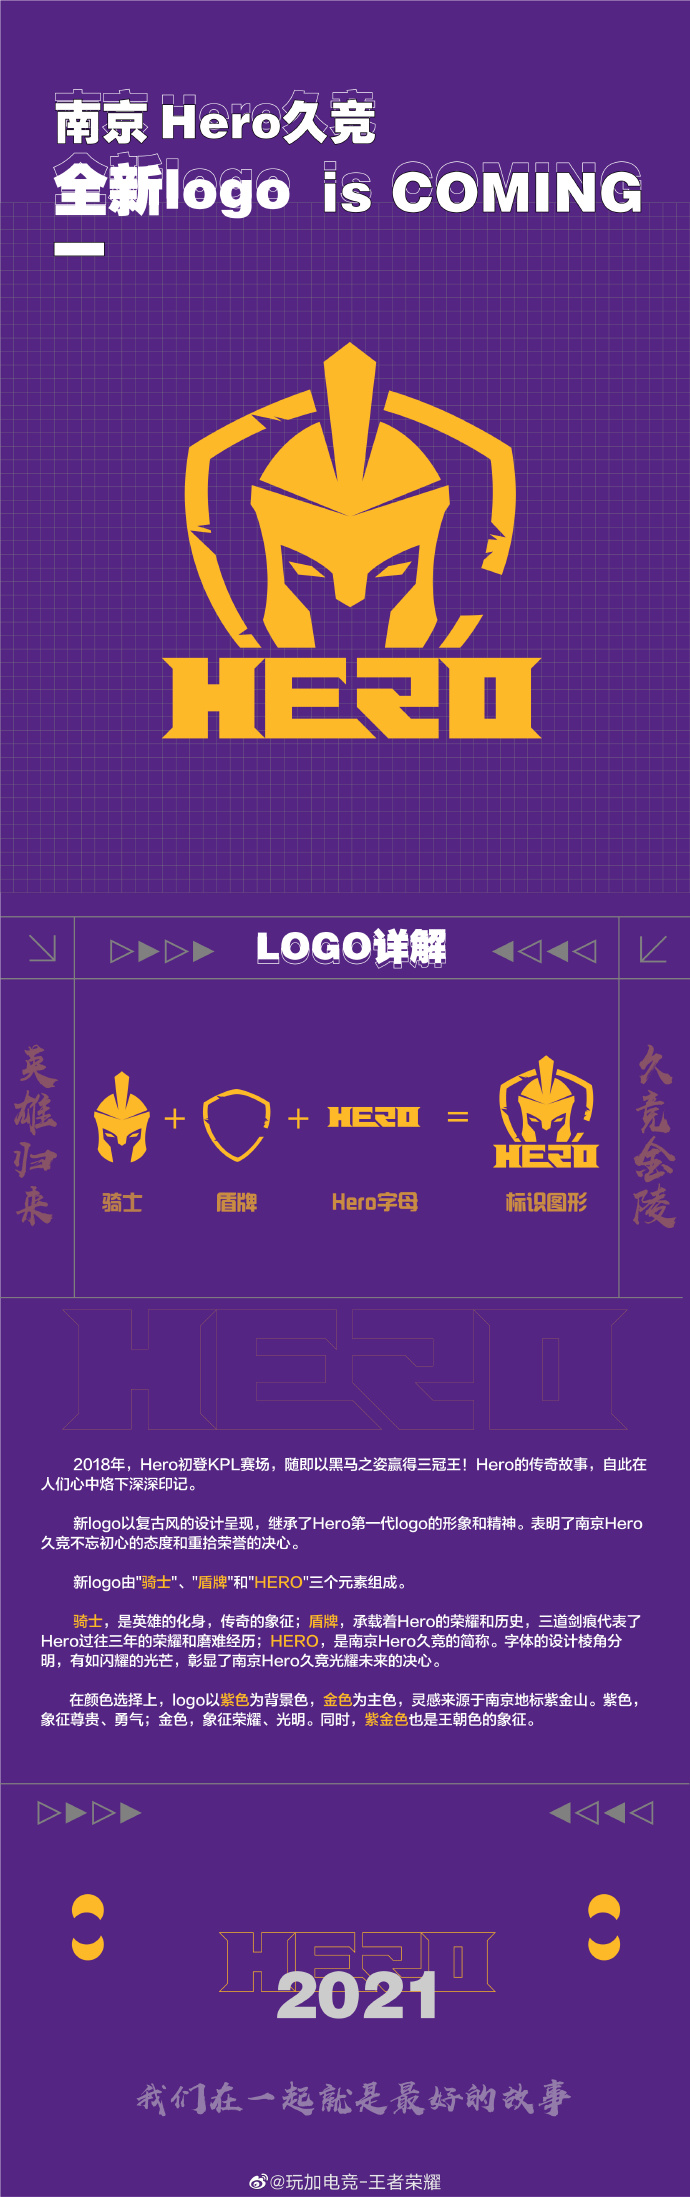 南京Hero久竞正式启用全新logo：将以新的面貌重新出发